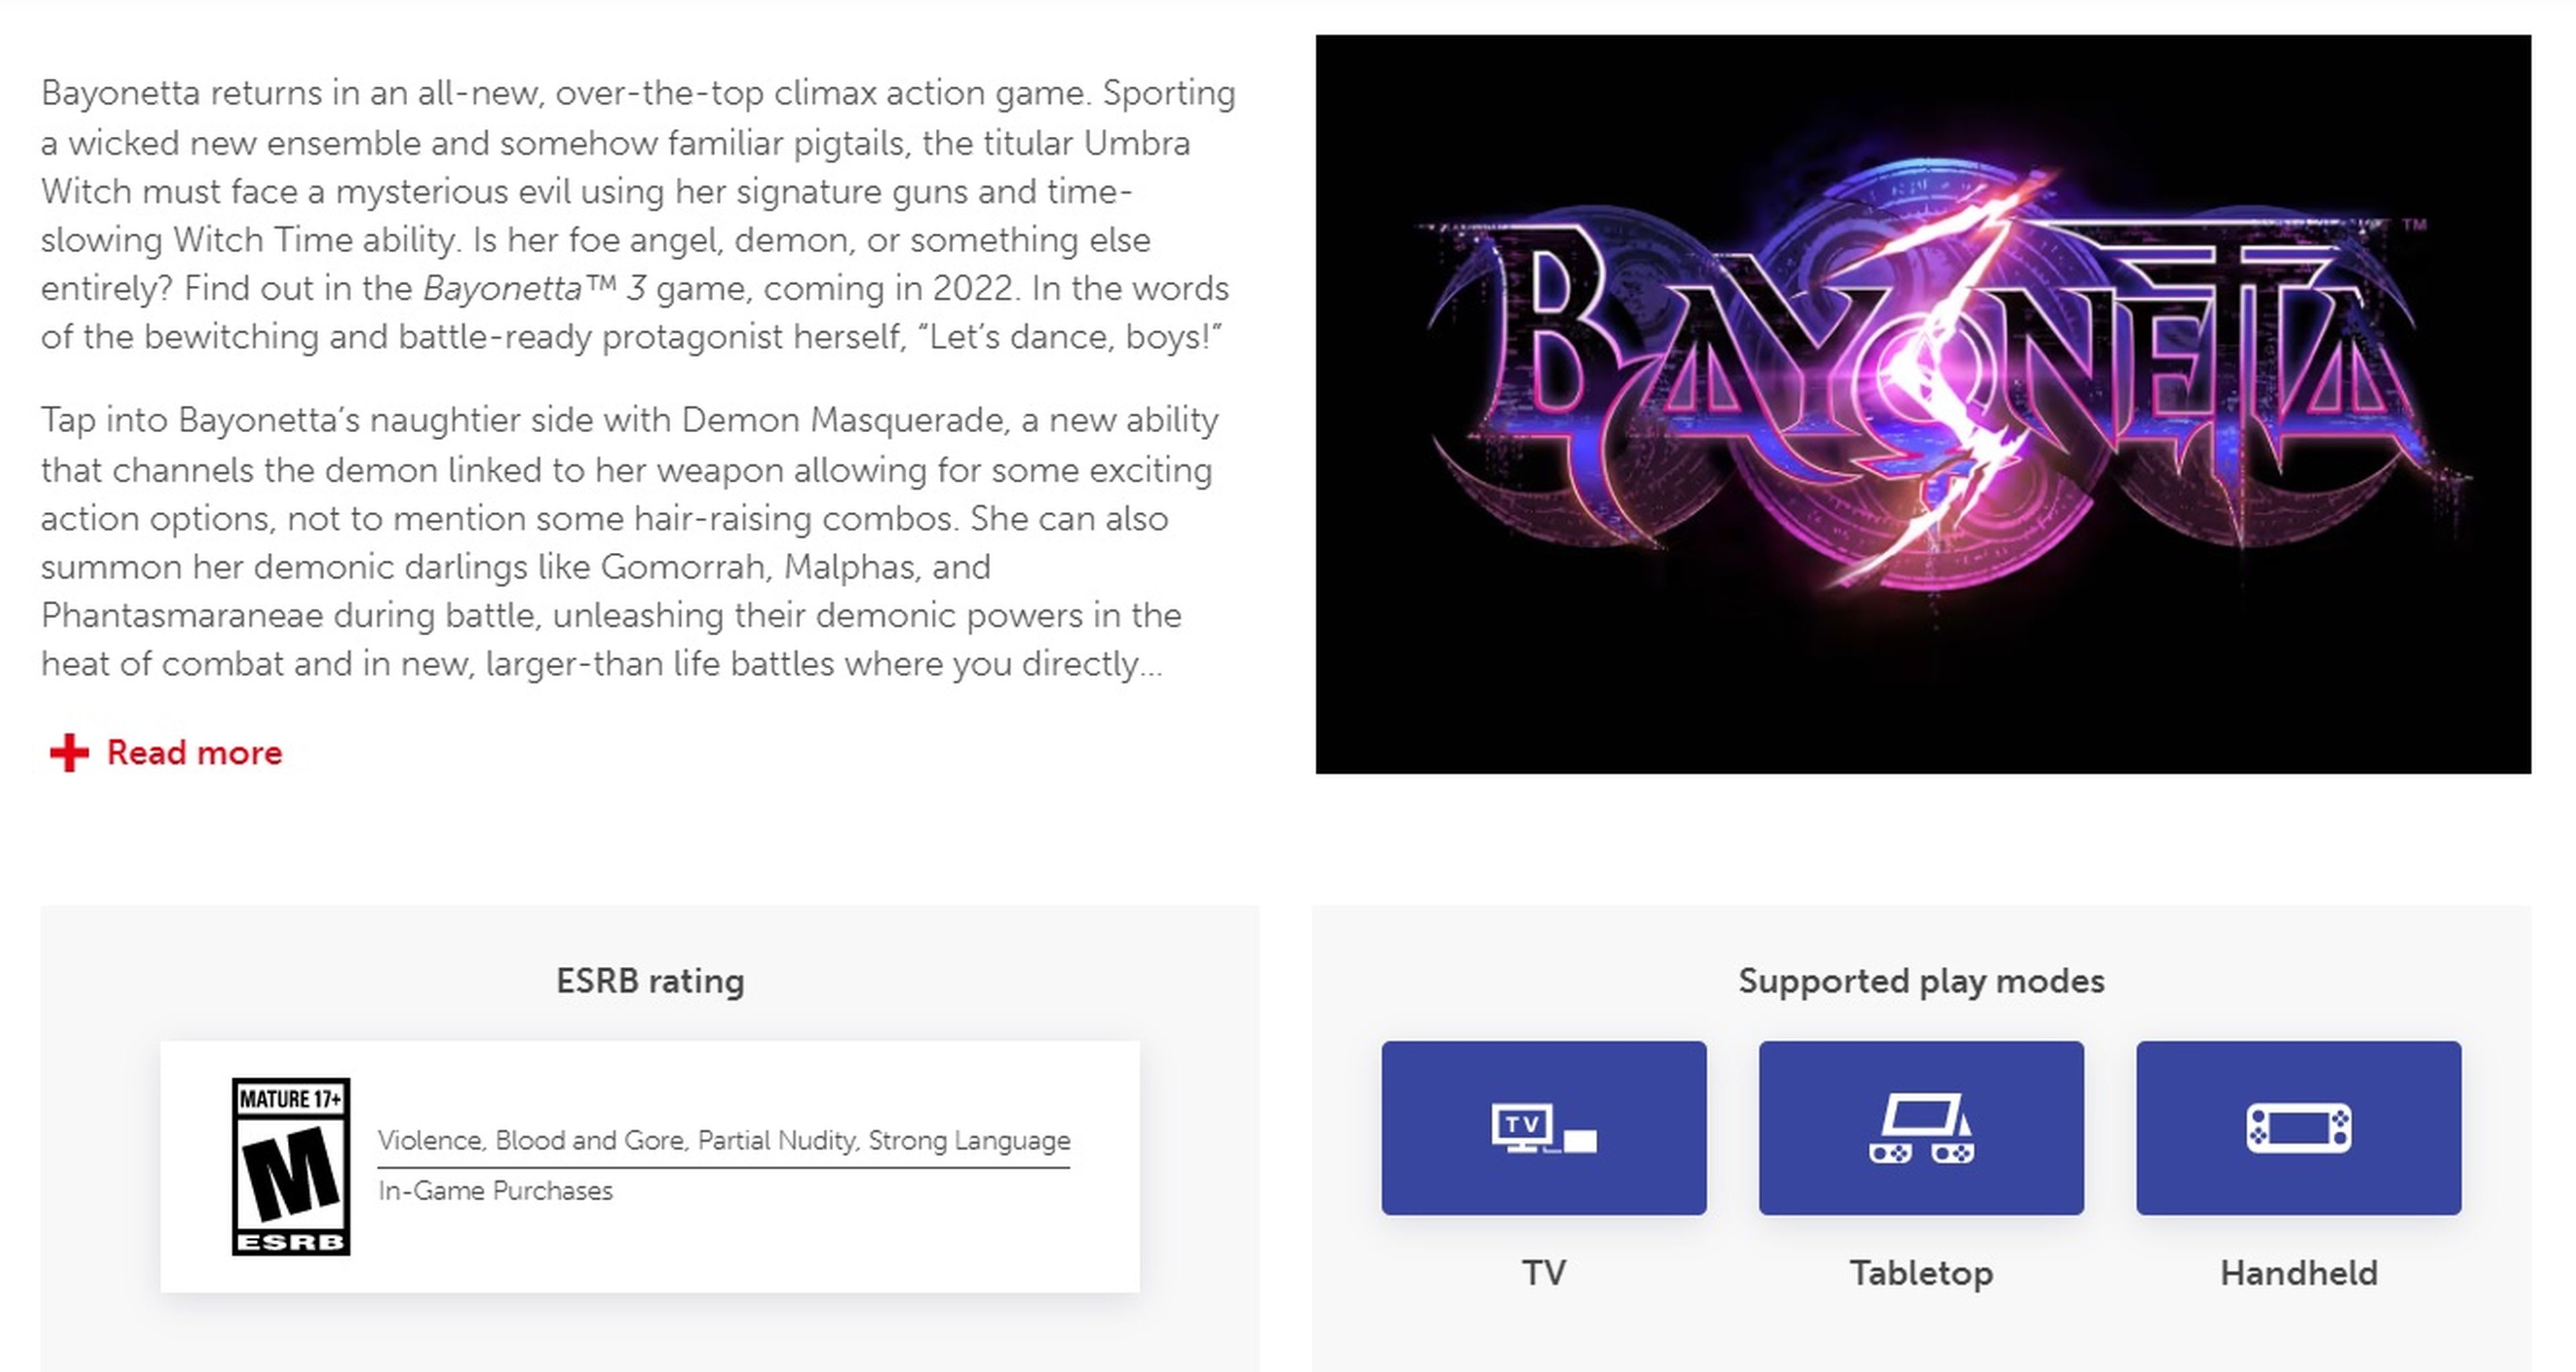 Bayonetta 3 pode ganhar uma DLC, sugere classificação do ESRB